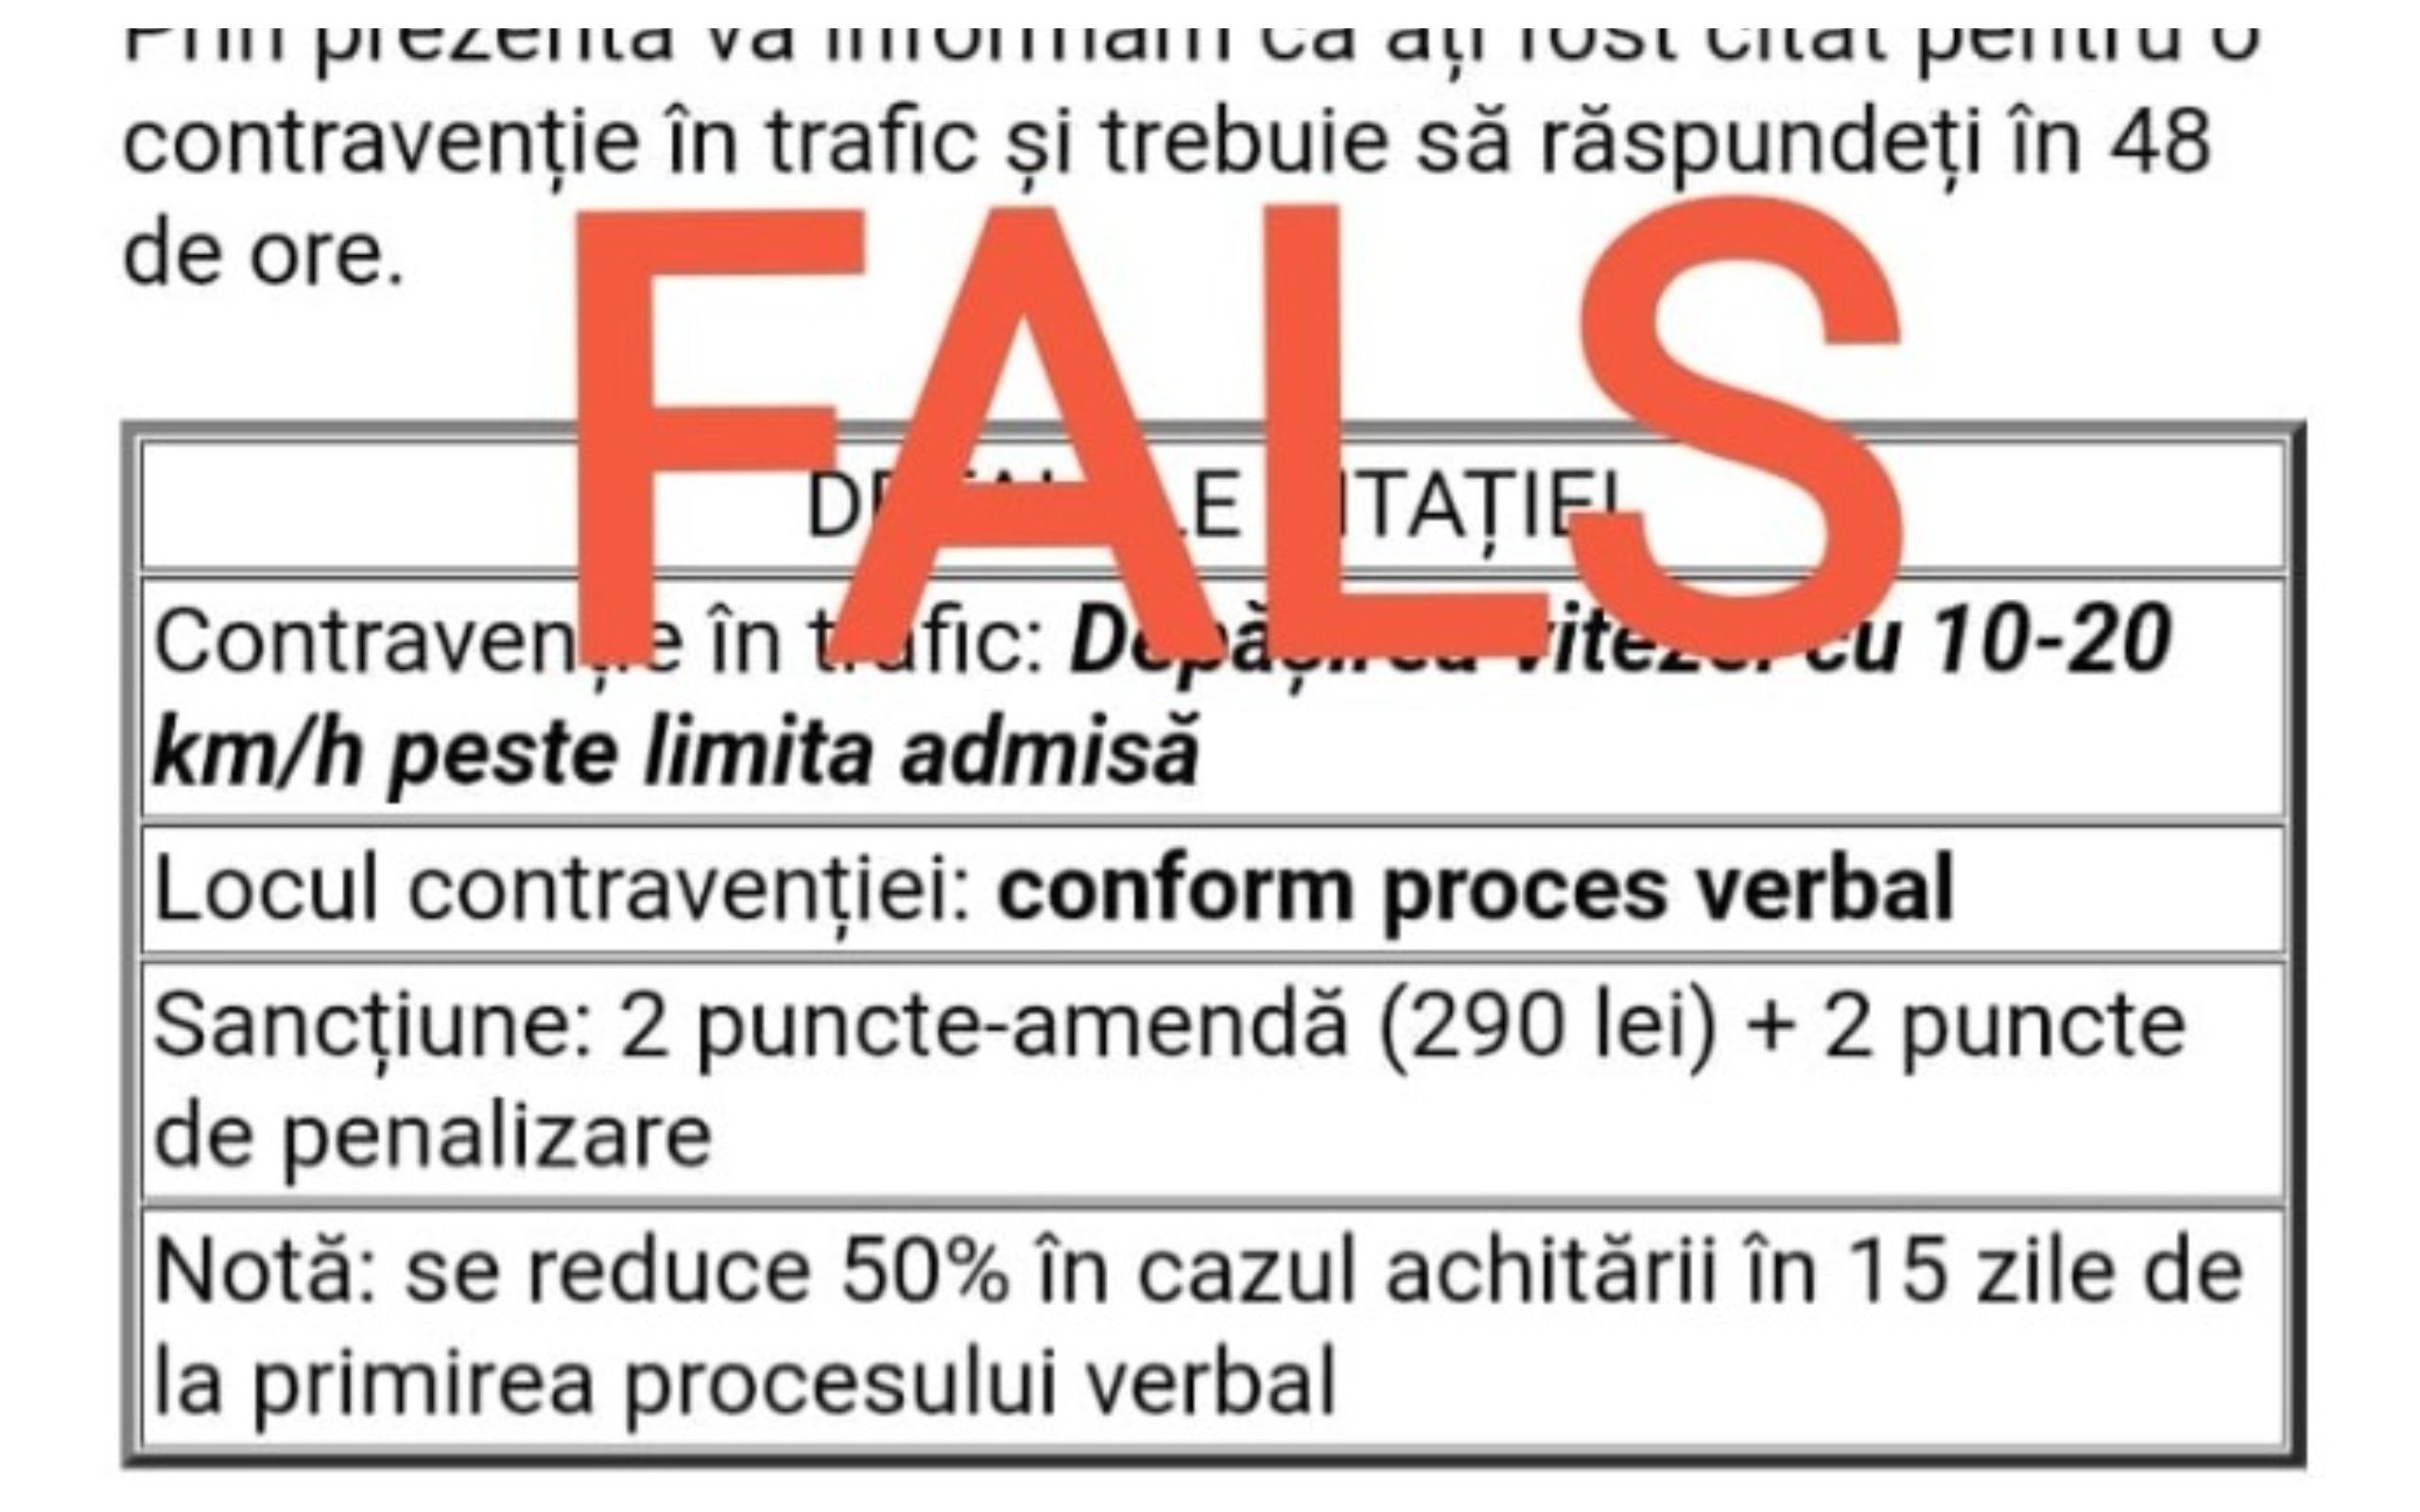 Poliţia Română avertizează asupra unui nou tip de înşelăciune: Amenzi false venite pe e-mail